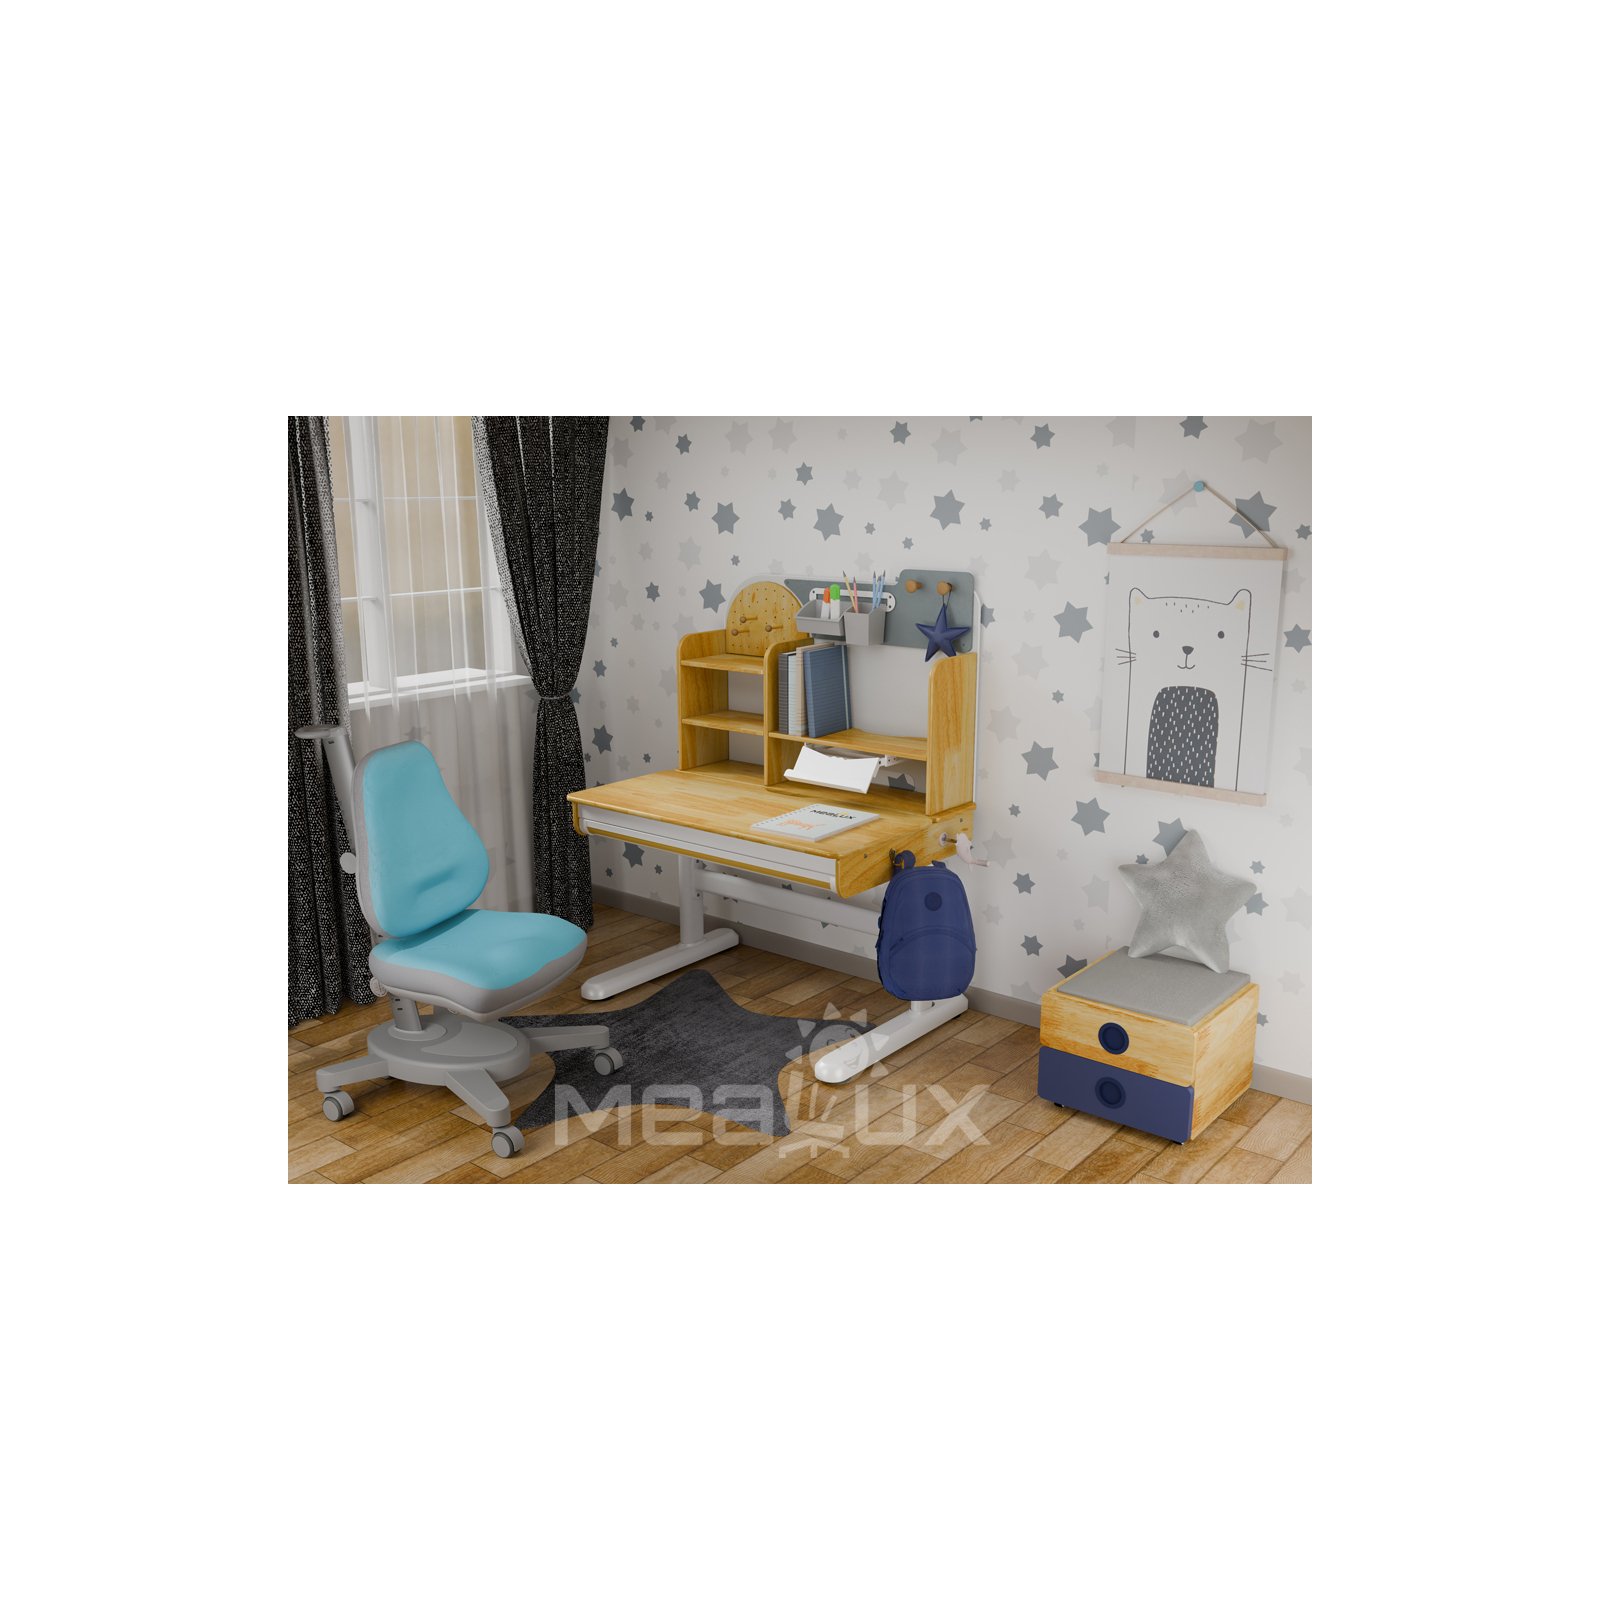 Парта с креслом Mealux Timberdesk S (парта+кресло+тумба) (BD-685 S+ box BD 920-2 BL+Y-110 DBG) изображение 2